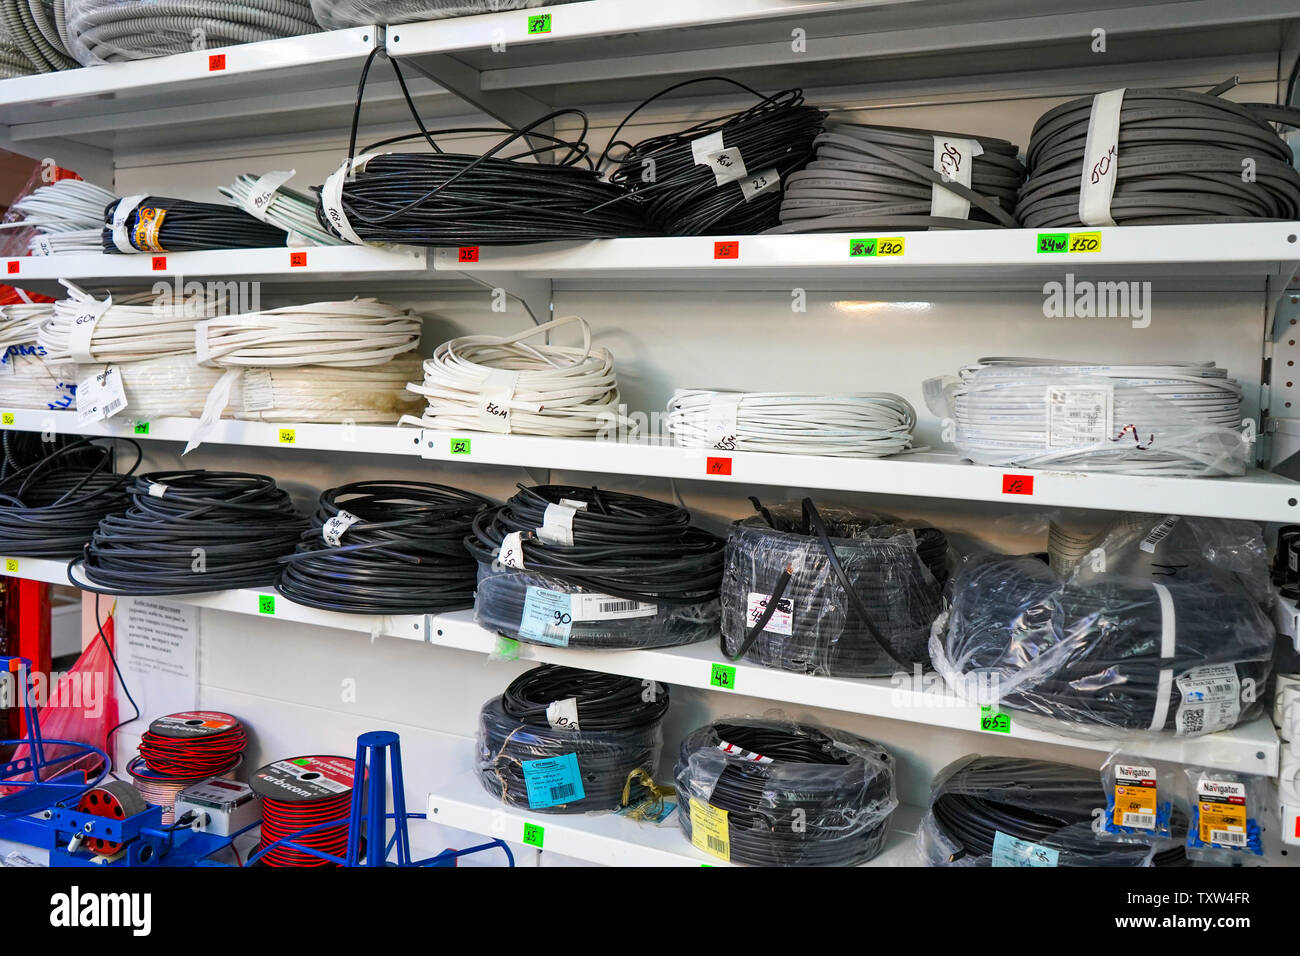 Tscheljabinsk, Russland - Juni 2019. Elektrofachmarkt. Rack mit Waren. Rollen von elektrischen Kabeln im Store. Kabel für Strom verkauft. Stockfoto